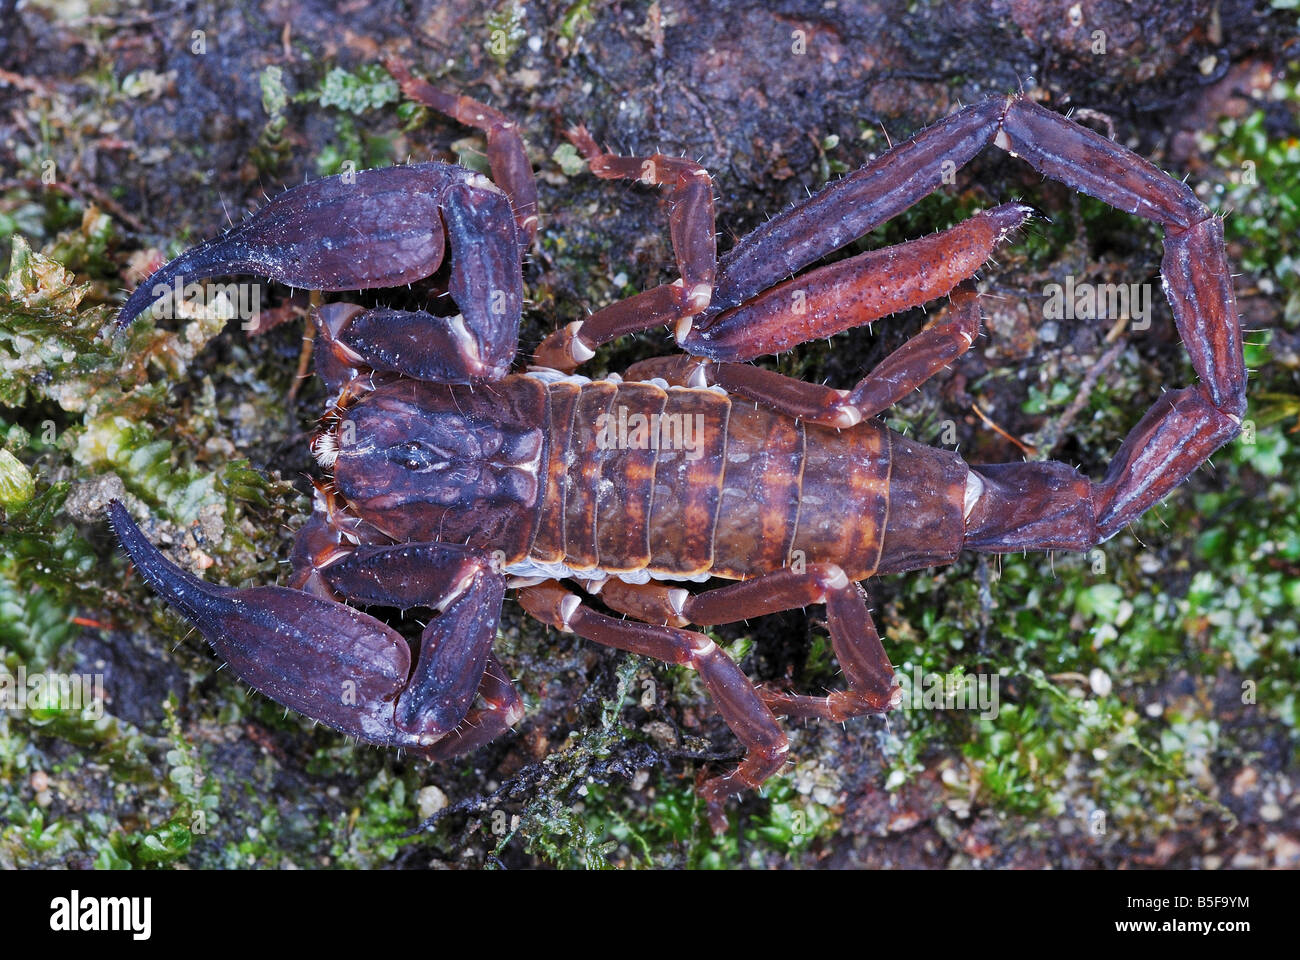 Chaerilus pictus famille : chaerilidae. un homme extrêmement rares espèces de scorpion. limitée à la trans himalayan forêts. Banque D'Images